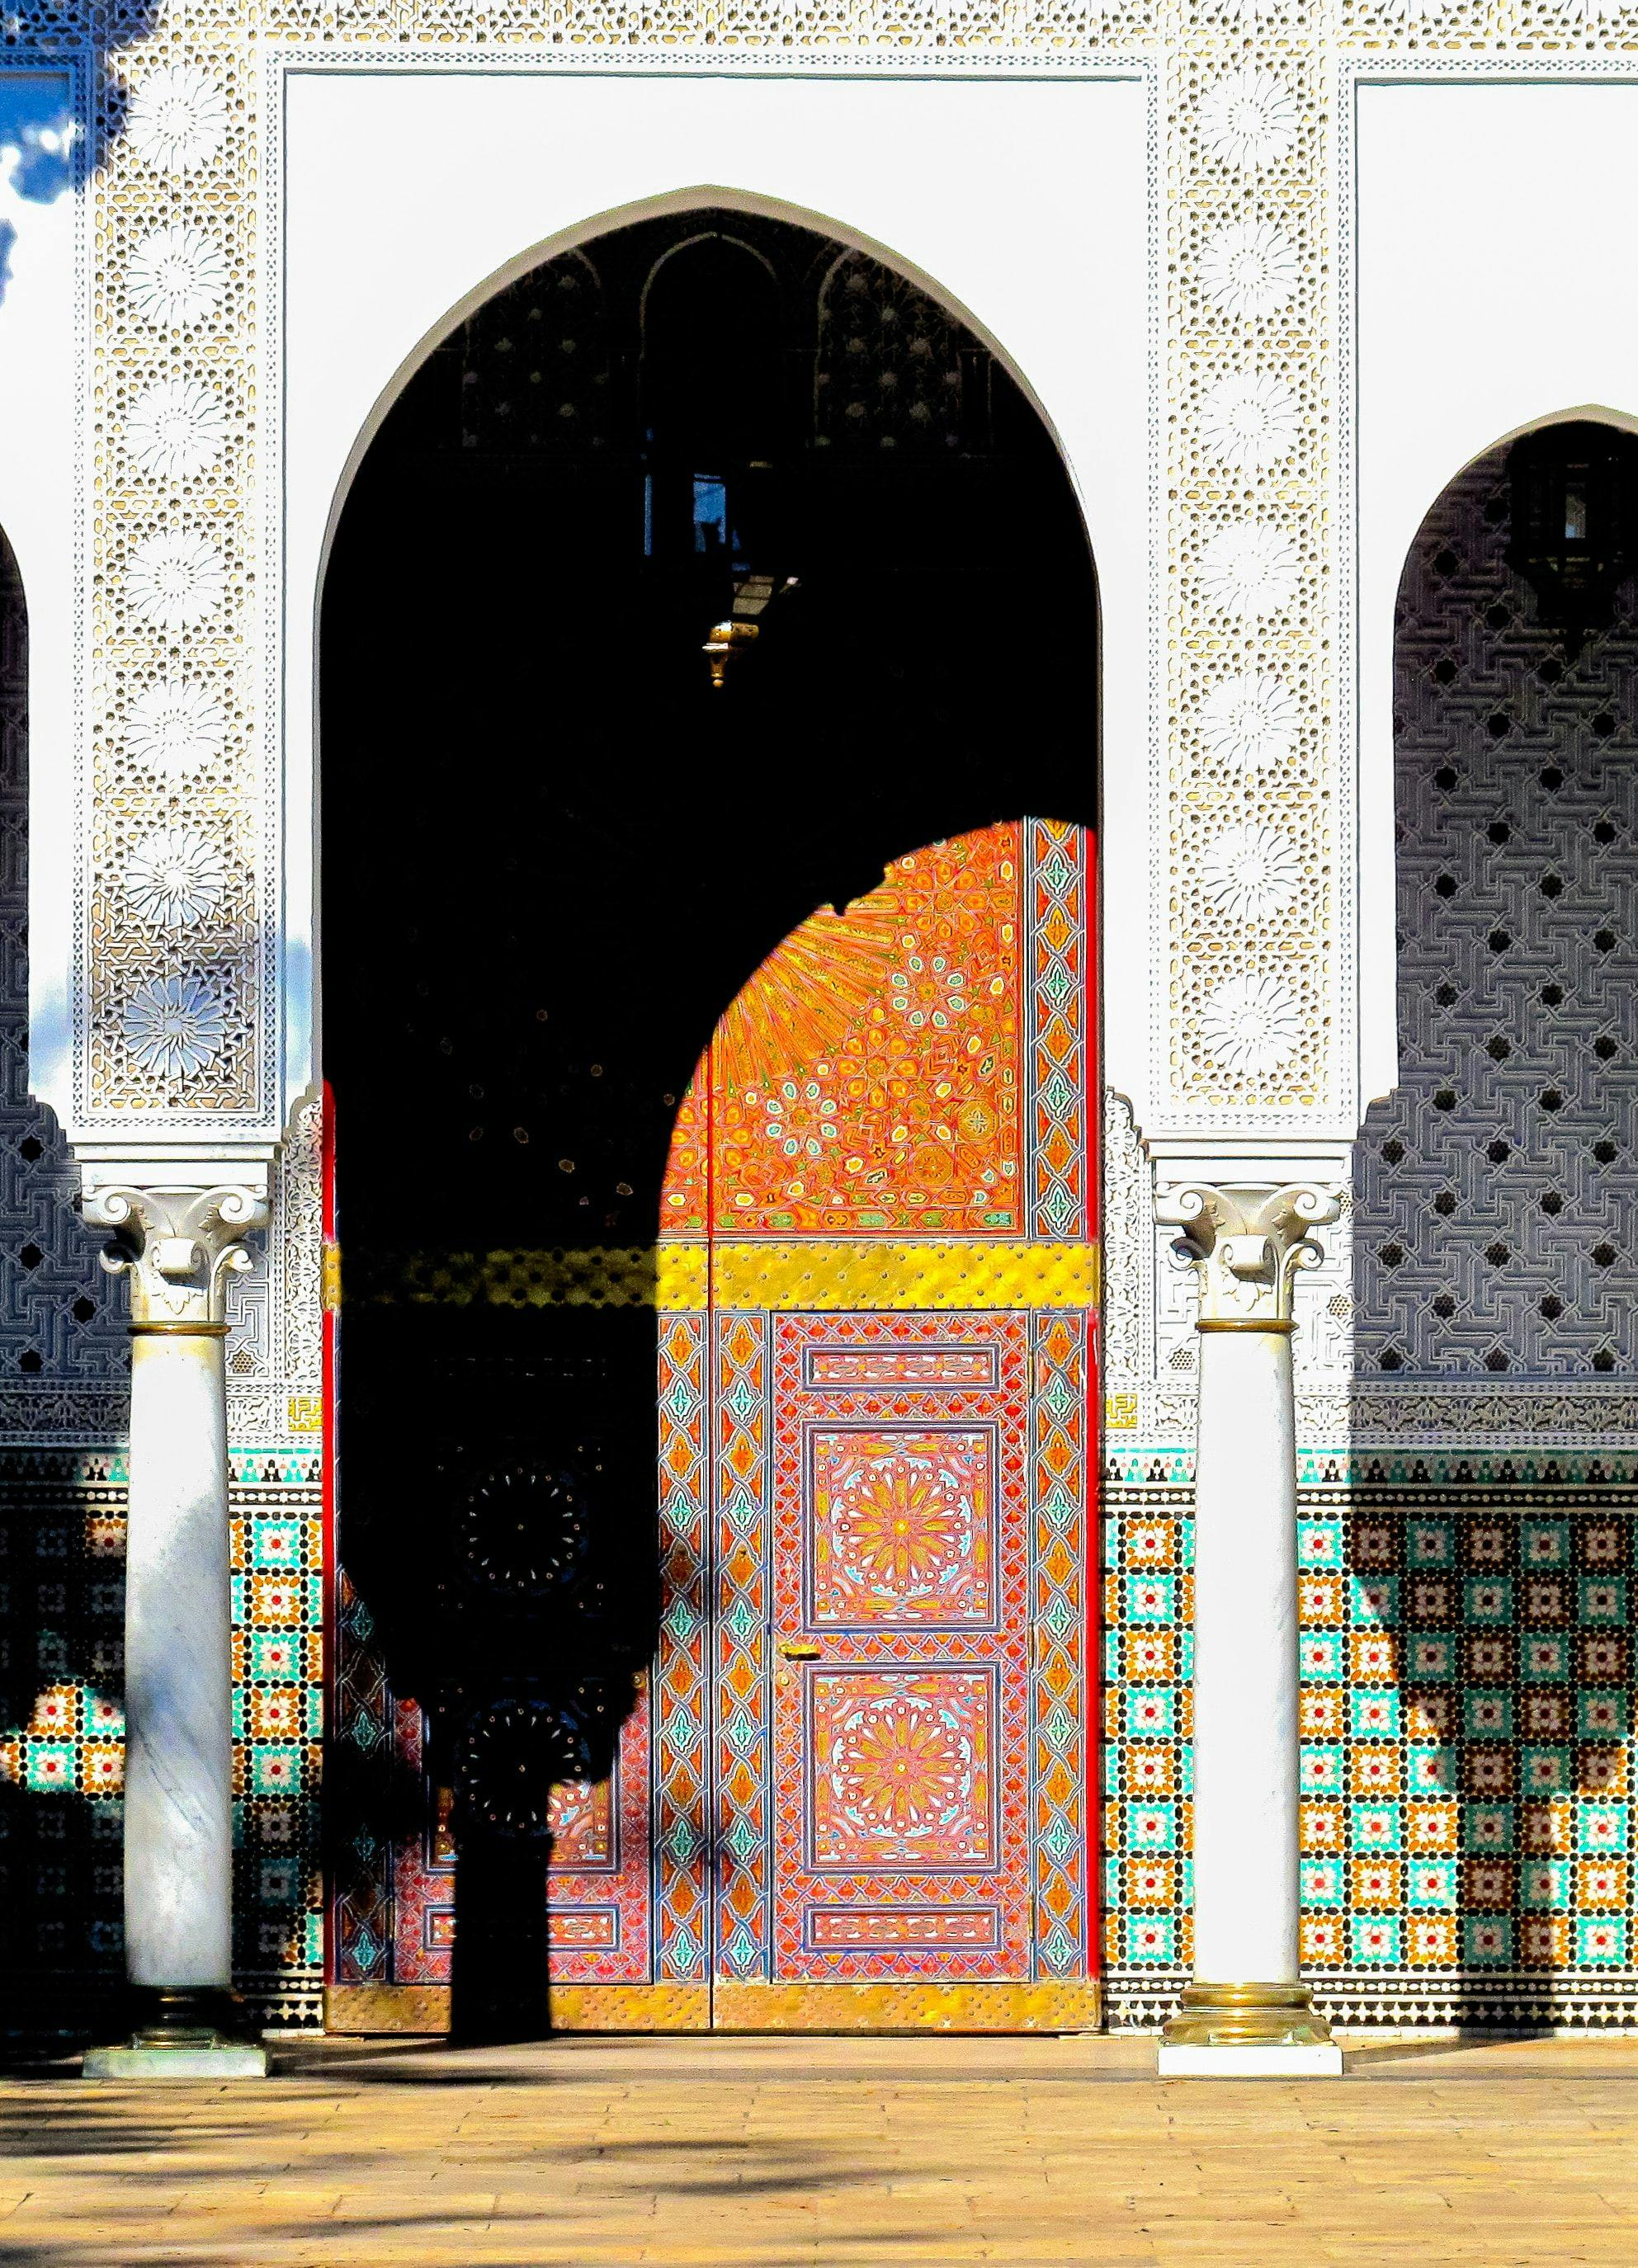 Colored doorway in Casablanca, Morocco